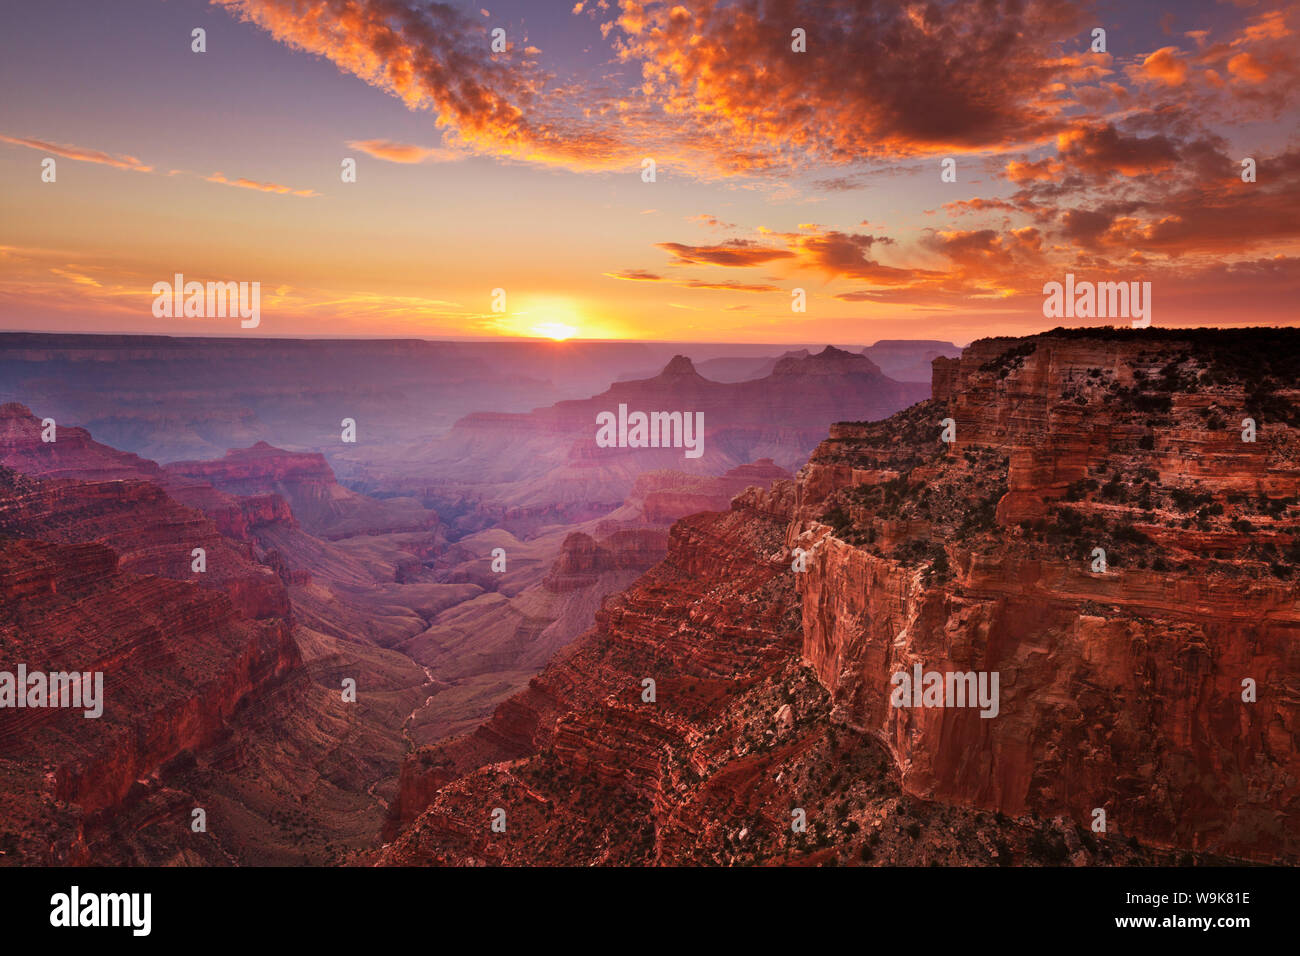 Cape Royal Sicht bei Sonnenuntergang, North Rim, Grand Canyon Nationalpark, UNESCO-Weltkulturerbe, Arizona, Vereinigte Staaten von Amerika, Nordamerika Stockfoto